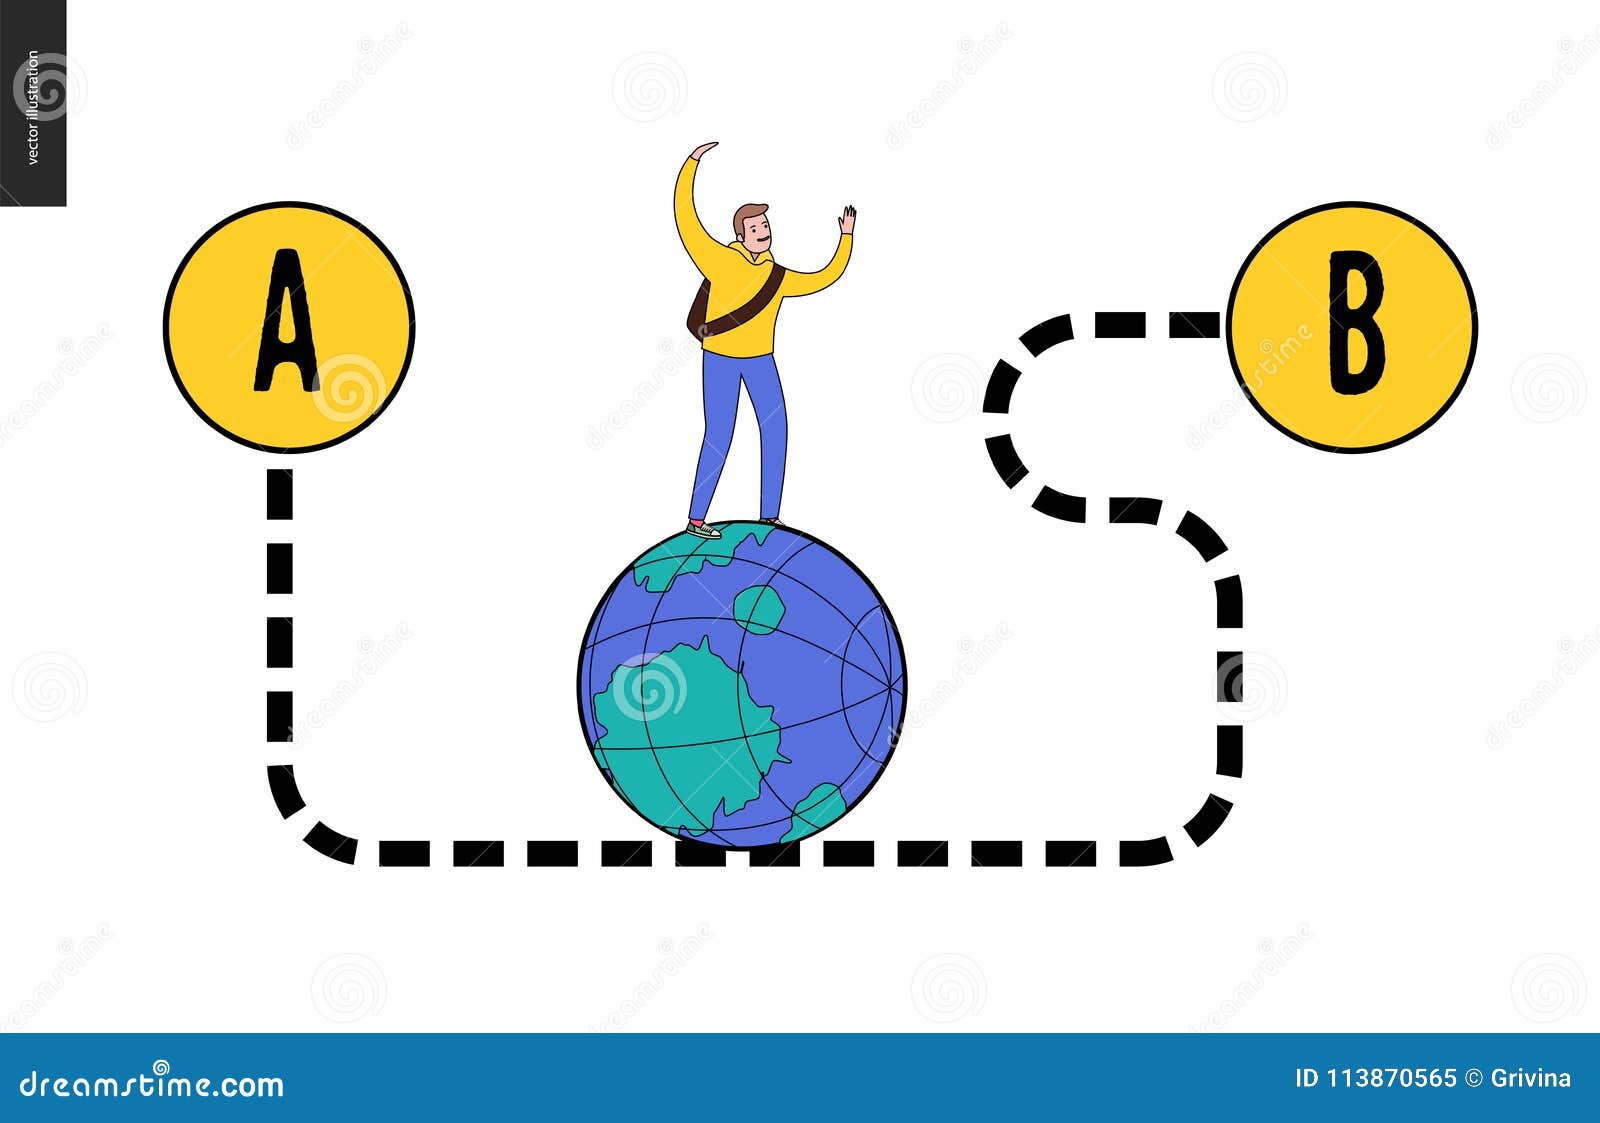 Da punto A per indicare B. Da punto A per indicare problema di B, un concetto del trasporto - un giovane viaggiatore maschio che cammina sul globo dal modo curvo tratteggiato